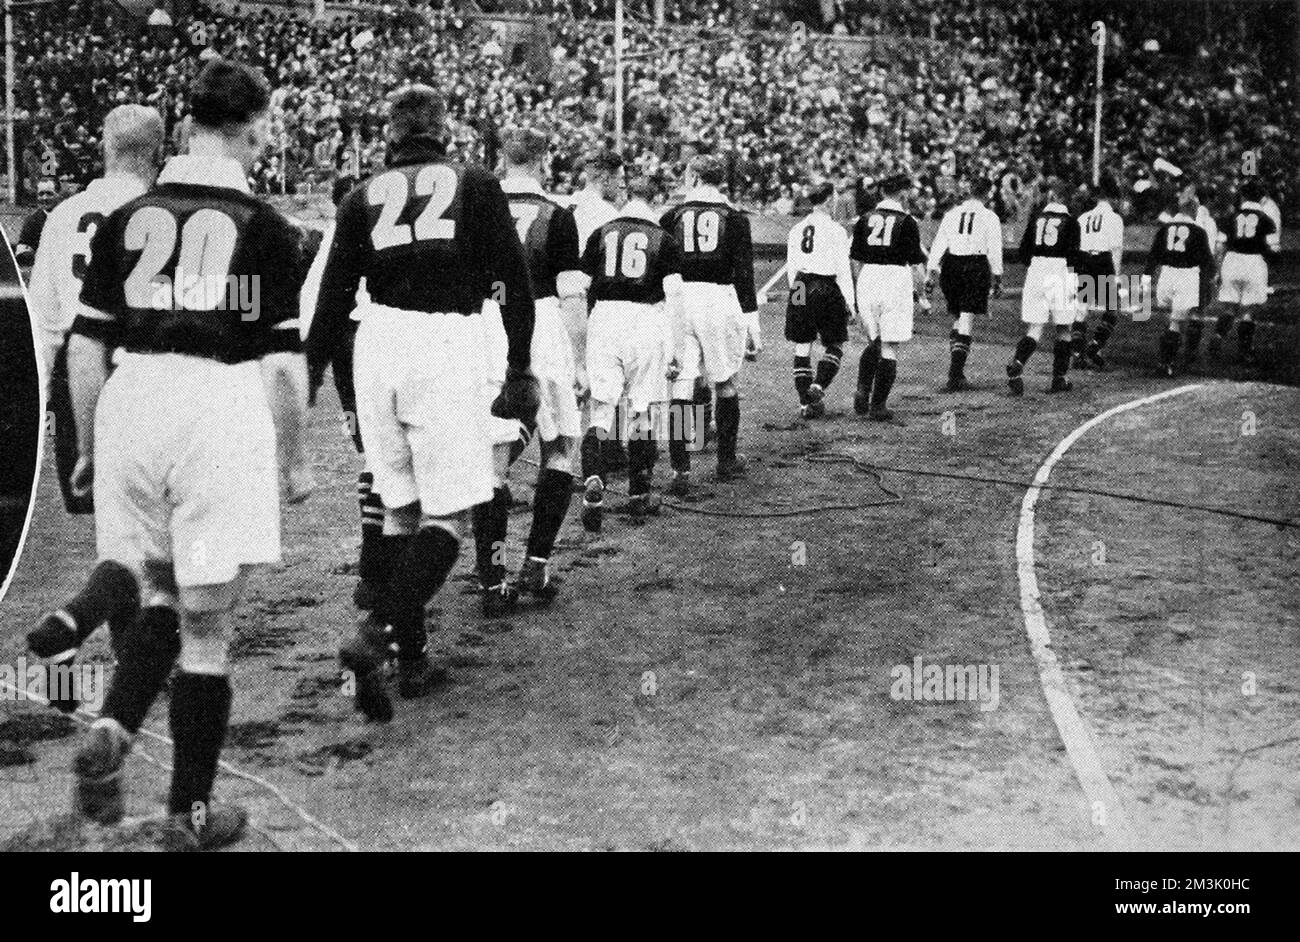 Die Teams von Everton (leichte Shirts) und Manchester City (dunkle Shirts) gehen auf das Spielfeld im Wembley Stadium, bevor die F.A. Cup-Finale von 1933. Everton gewann das Spiel 1:0, dank eines Tors von Dixie Dean. Dies war eines der ersten Male, als Fußballer Nummern auf der Rückseite ihrer Hemden trugen. Der Grund für diese Innovation war, den BBC-Radiokommentatoren und ihren Zuhörern dabei zu helfen, die Aktion zu verfolgen. Wie man sieht, nahm Everton die Zahlen 1 bis 11 und Manchester City nahm 12 bis 22. Datum: 1933 Stockfoto